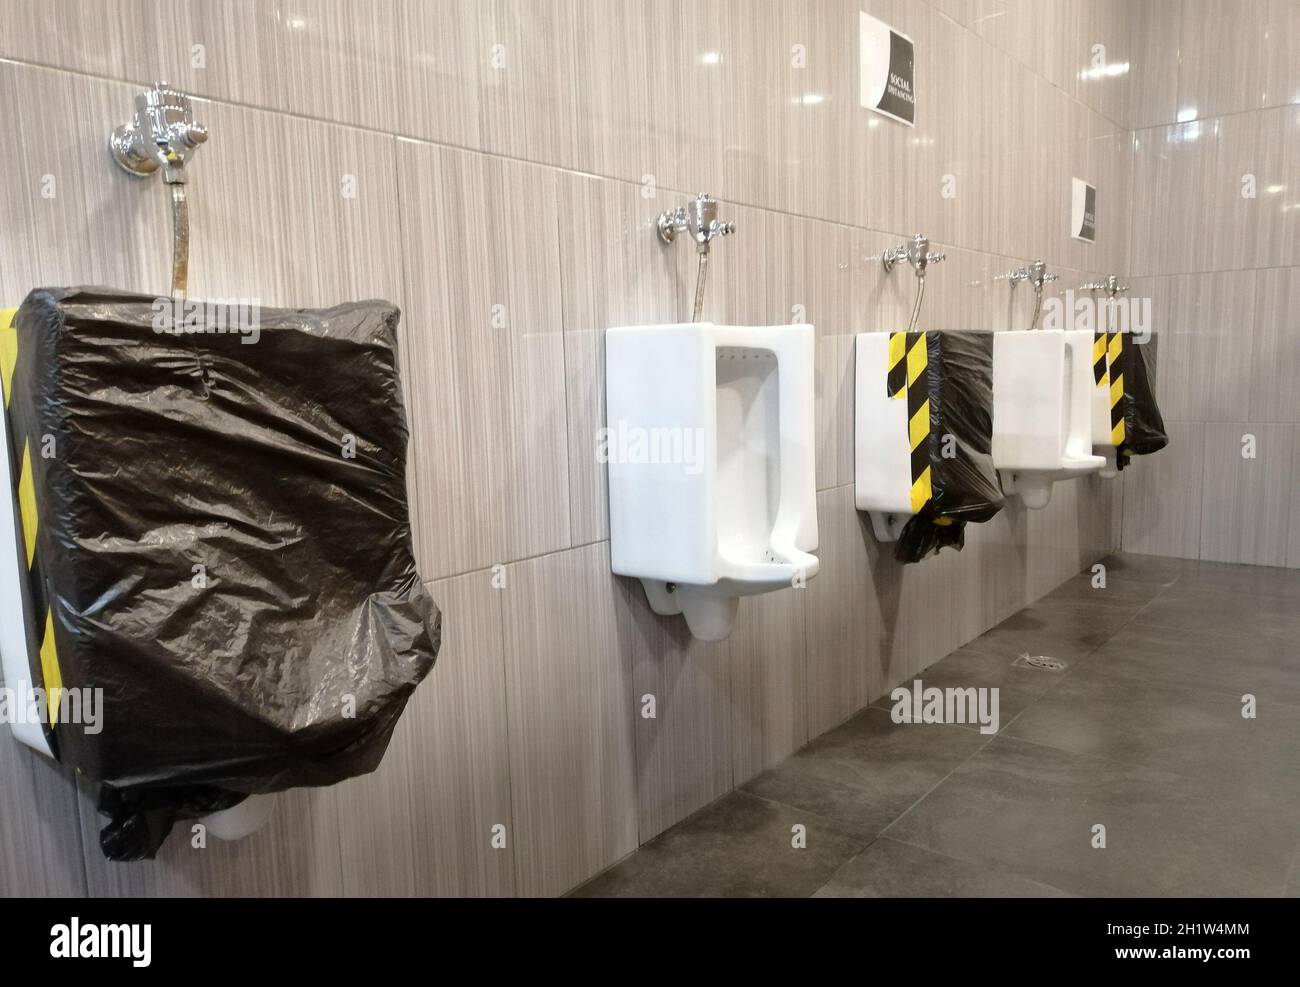 Öffentliche Männer Toilette während der Corona-Virus-Pandemie. Neue Normalität, dass Menschen soziale Distanz halten müssen, um eine Ausbreitung des Virus zu verhindern. Persönliche Hygiene, s Stockfoto